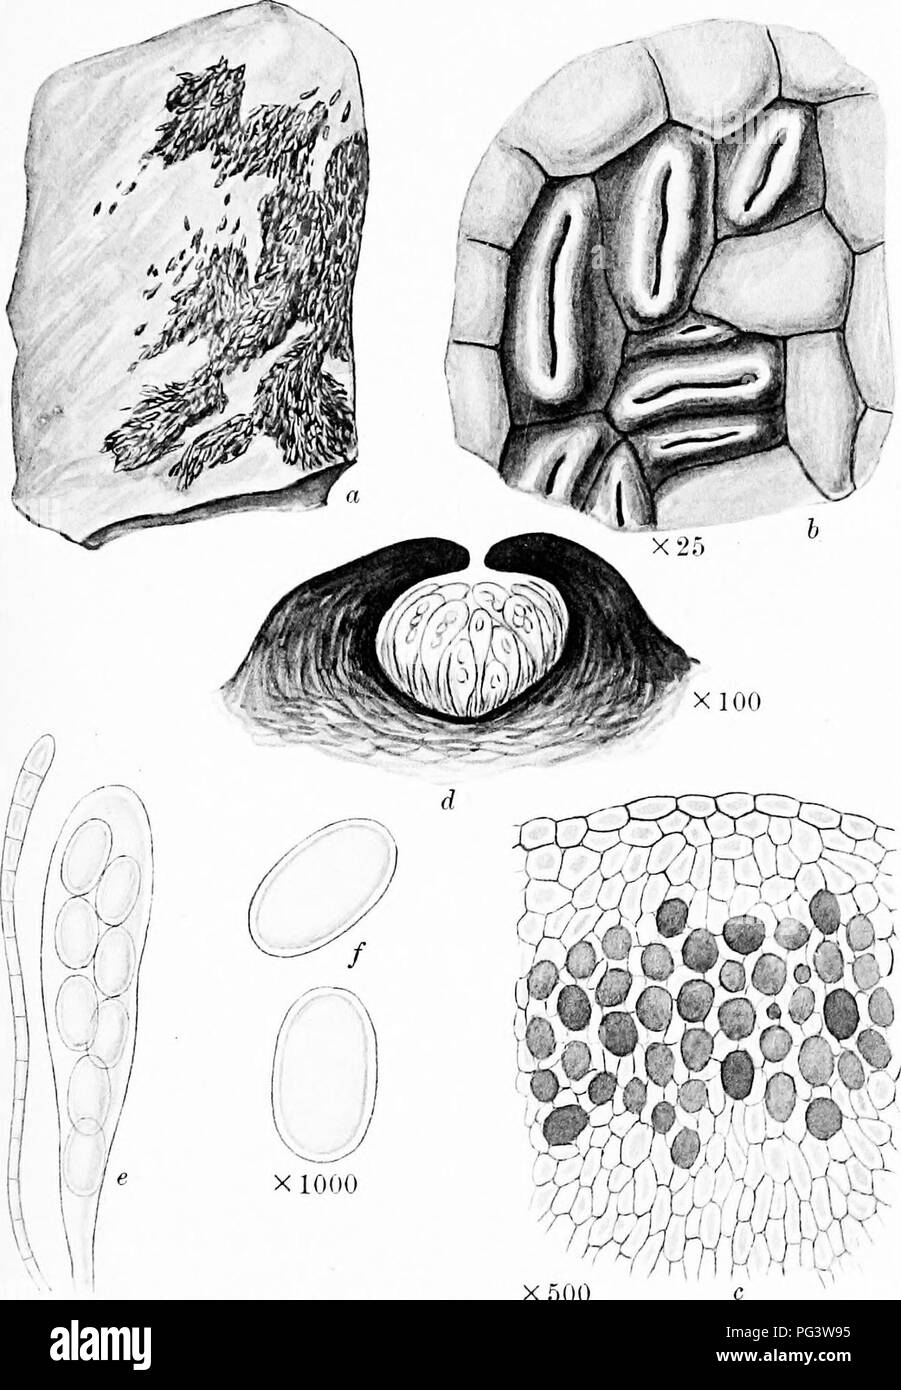 . Una monografia di licheni trovato in Gran Bretagna; essendo un catalogo descrittivo della specie nell'erbario del British Museum. I licheni. La piastra 22. X 500 X500 TESSEIIATA LITHOGRAPHA JSfyl. a. Impianto su roccia. b. Porzione di tallo e apothecia. c. Sezione verticale di tallo, d. Sezione verticale di apothecium. c. Aschi e paraphysi /. Spore.. Si prega di notare che queste immagini vengono estratte dalla pagina sottoposta a scansione di immagini che possono essere state migliorate digitalmente per la leggibilità - Colorazione e aspetto di queste illustrazioni potrebbero non perfettamente assomigliano al lavoro originale. British Museum (storia naturale). Foto Stock